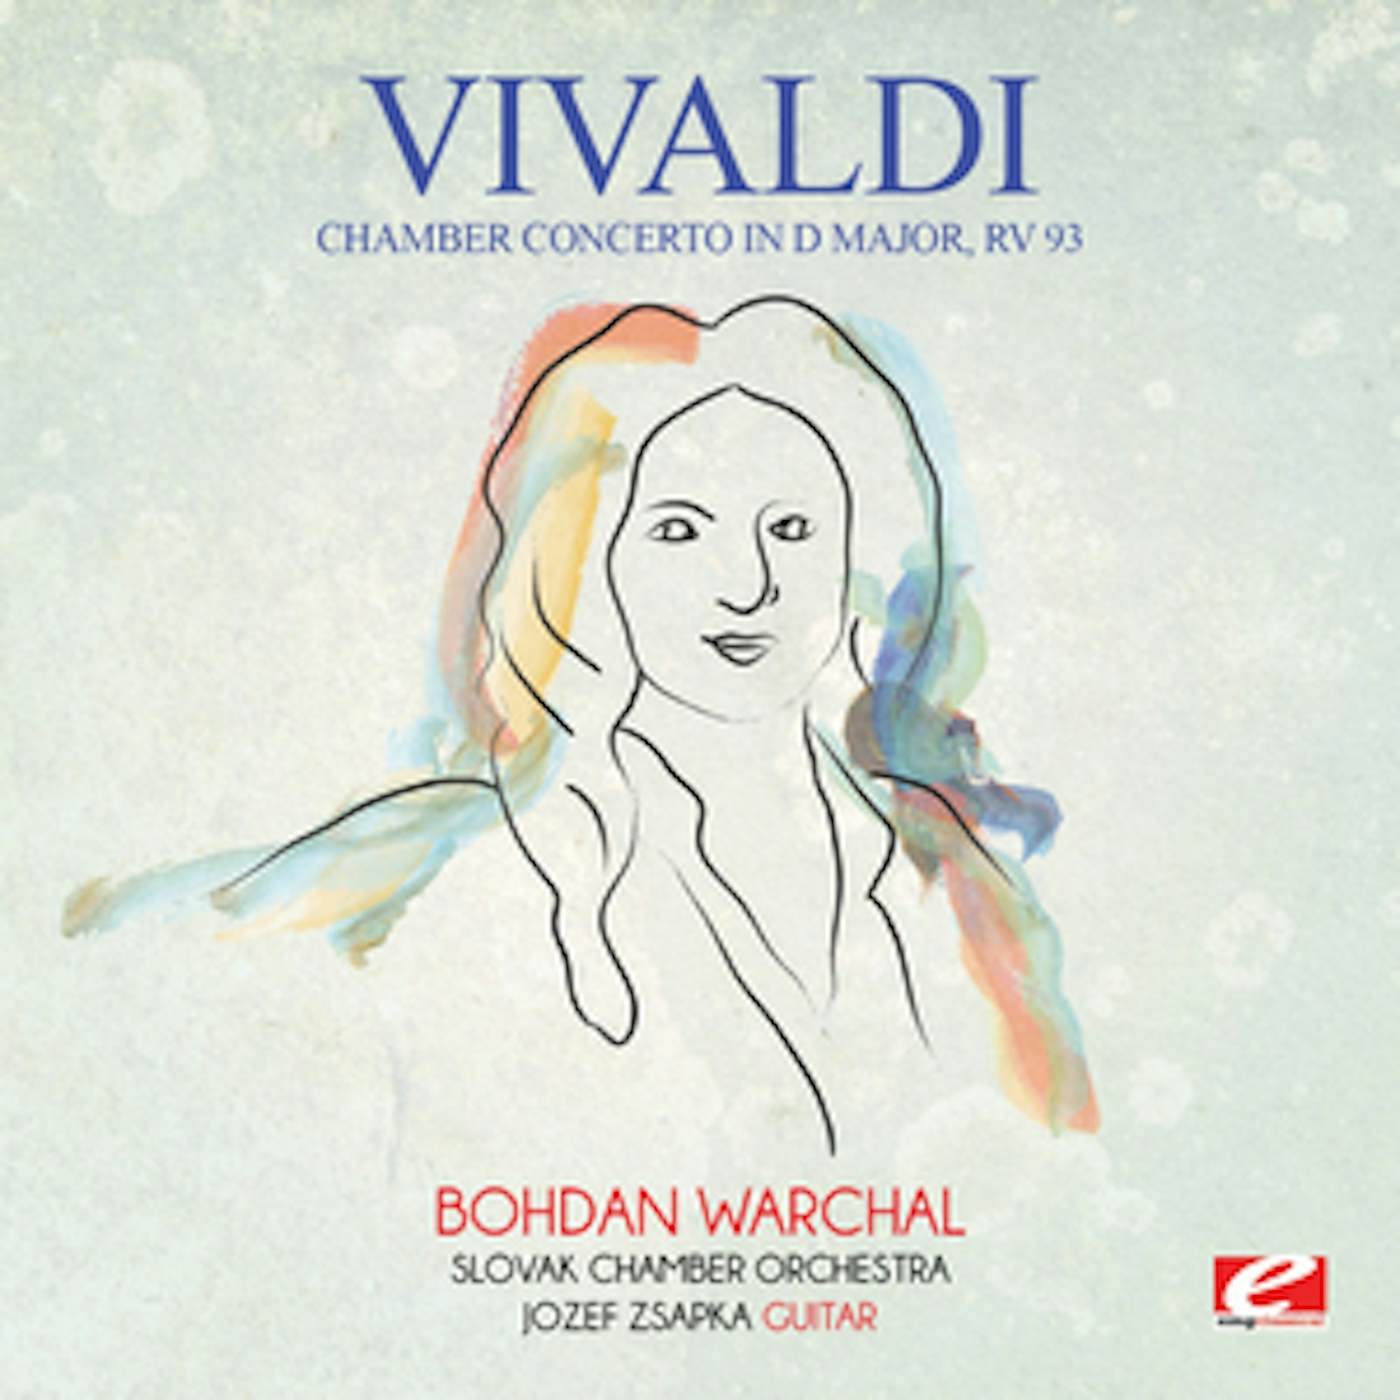 Antonio Vivaldi CHAMBER CONCERTO IN D MAJOR RV 93 CD